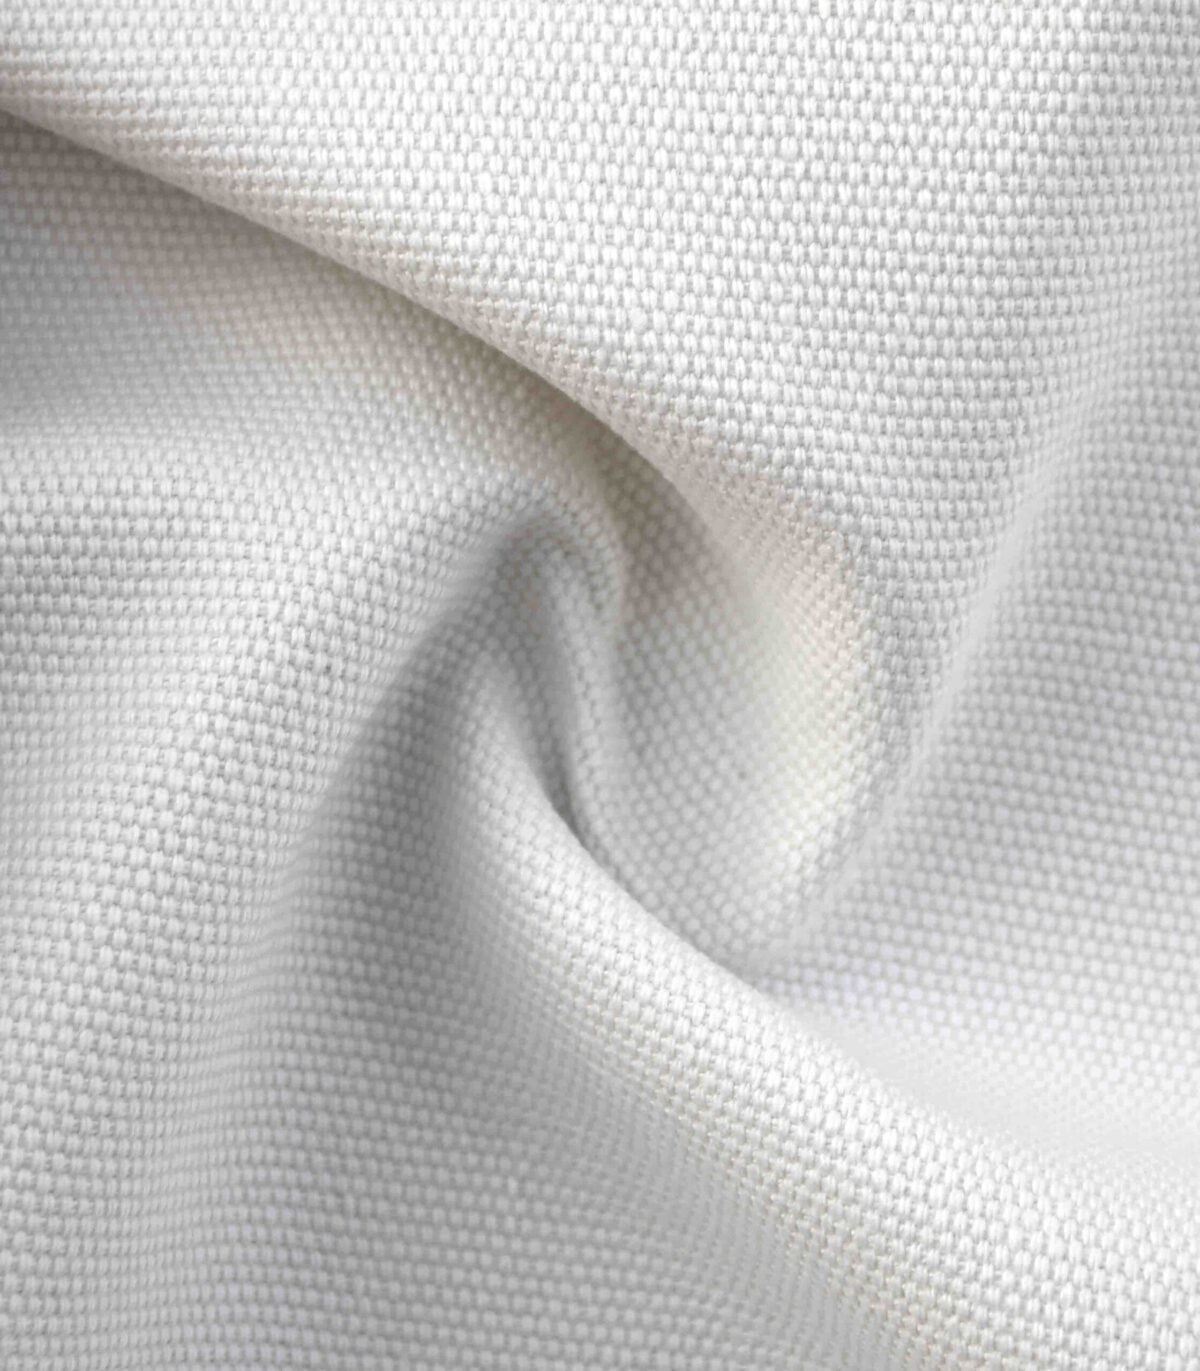 Cotton RFD Woven Matt Weave Fabric